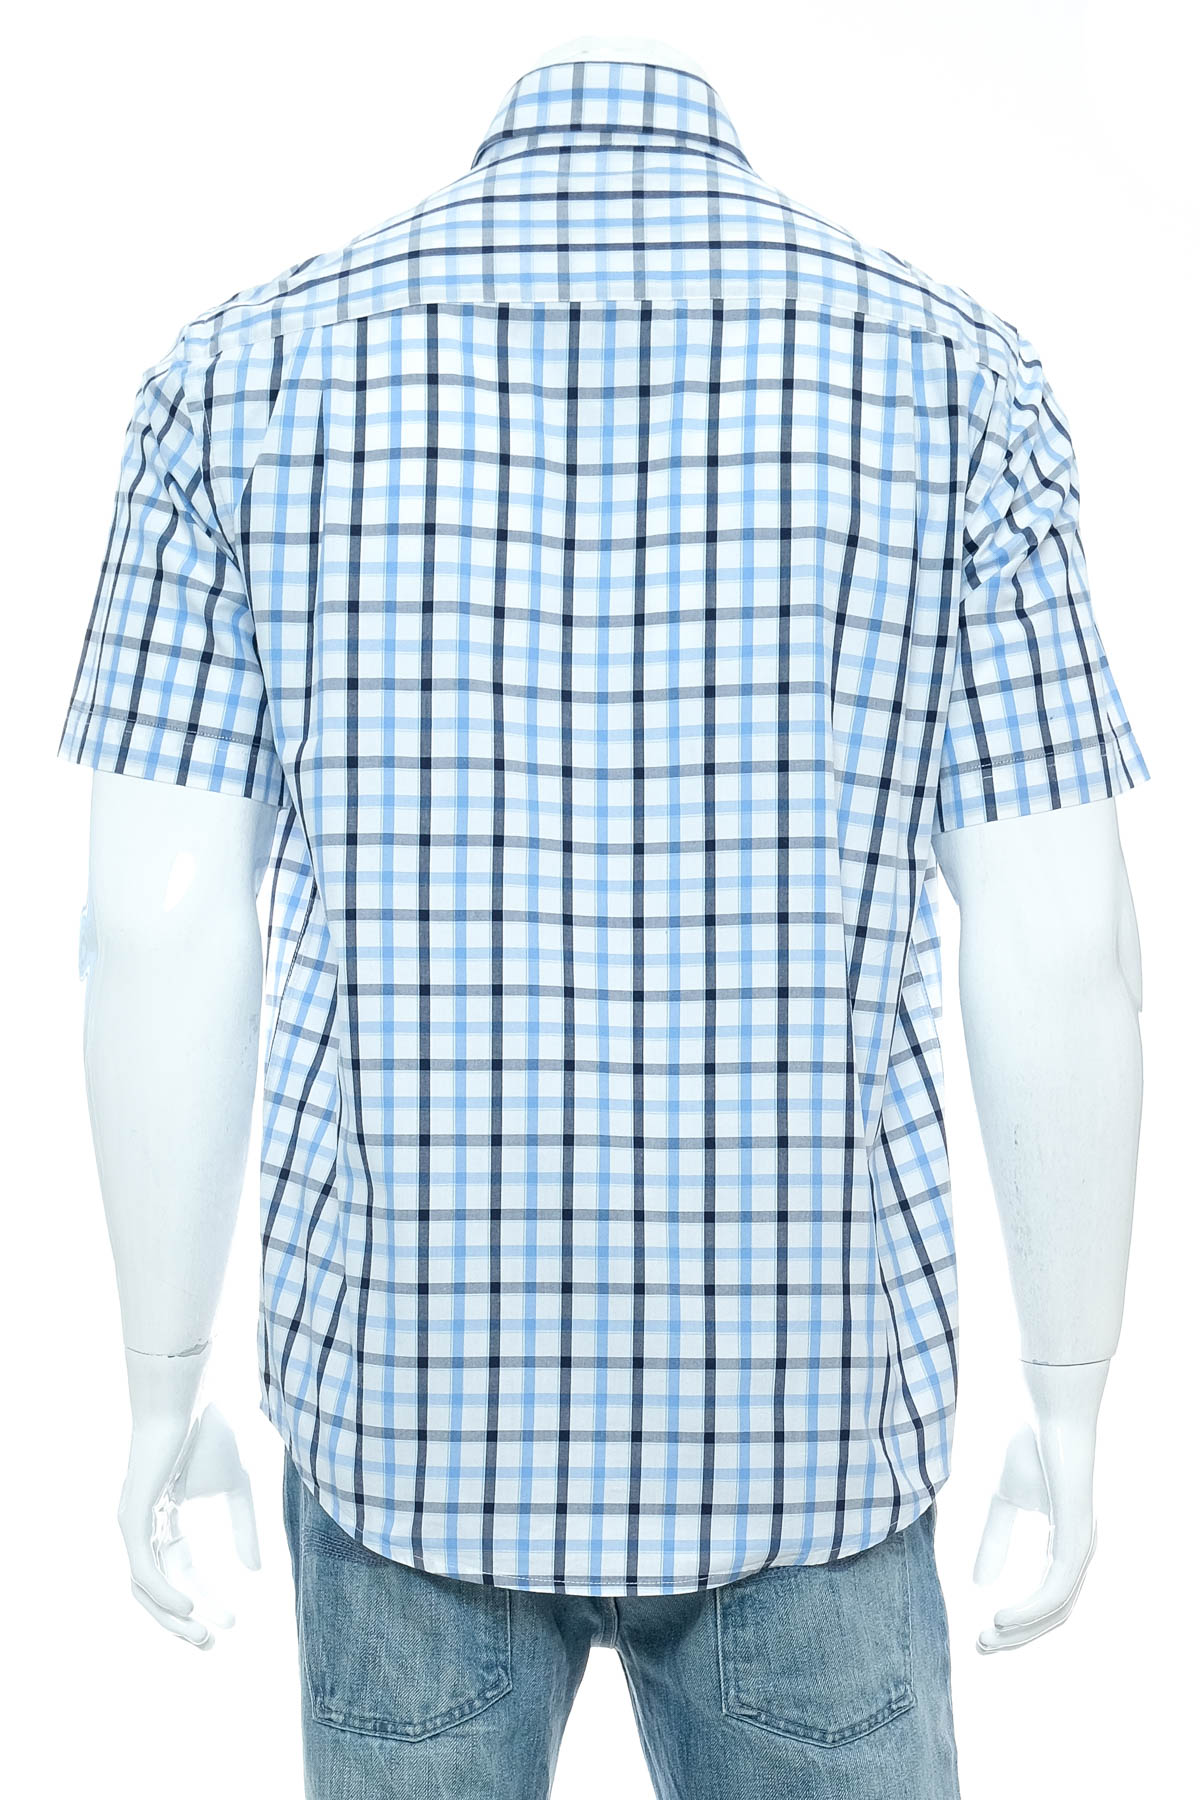 Ανδρικό πουκάμισο - C.Comberti - 1